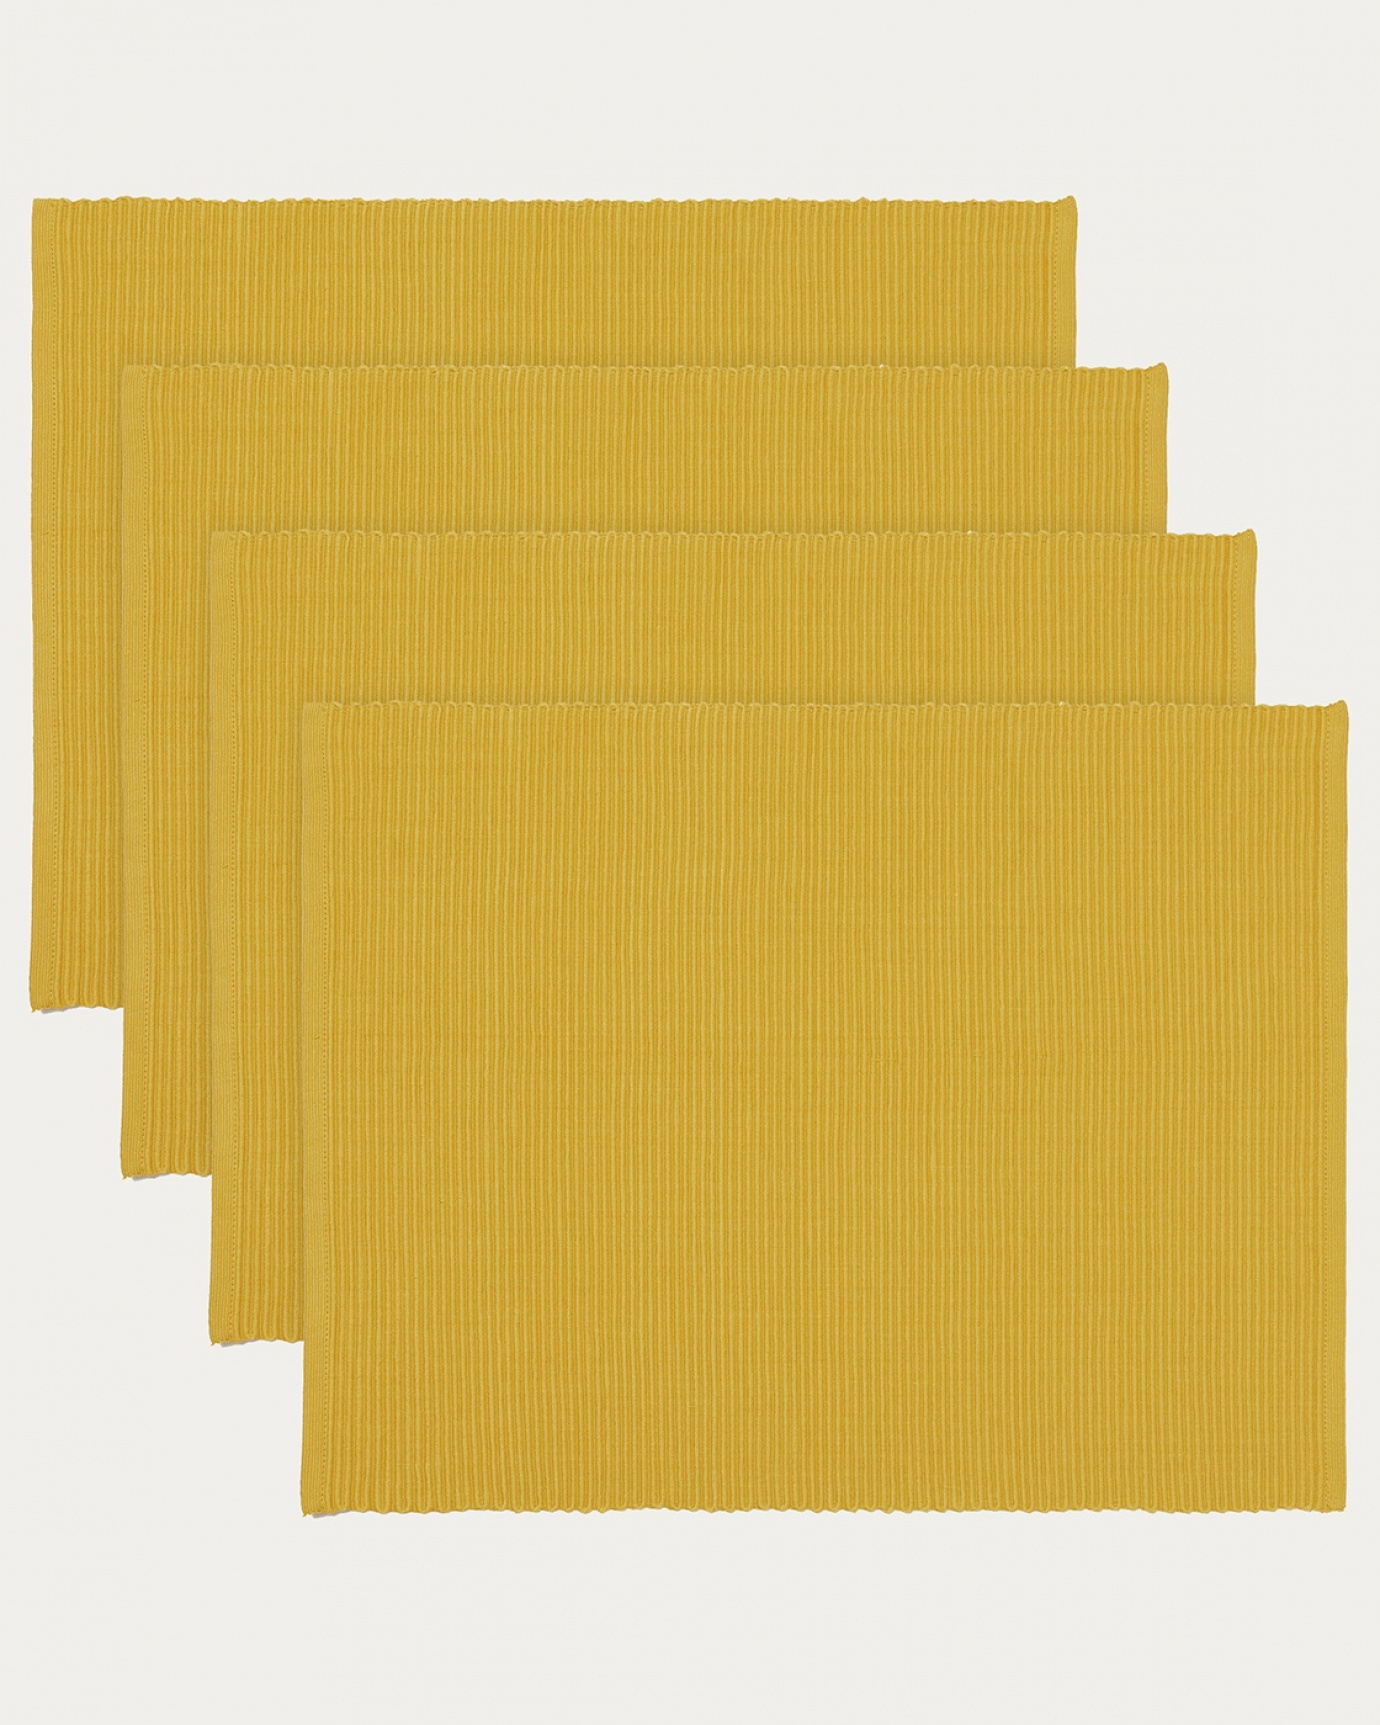 Immagine prodotto giallo mostarda tovaglietta UNI in morbido cotone a costine di qualità di LINUM DESIGN. Dimensioni 35x46 cm e venduto in 4-pezzi.